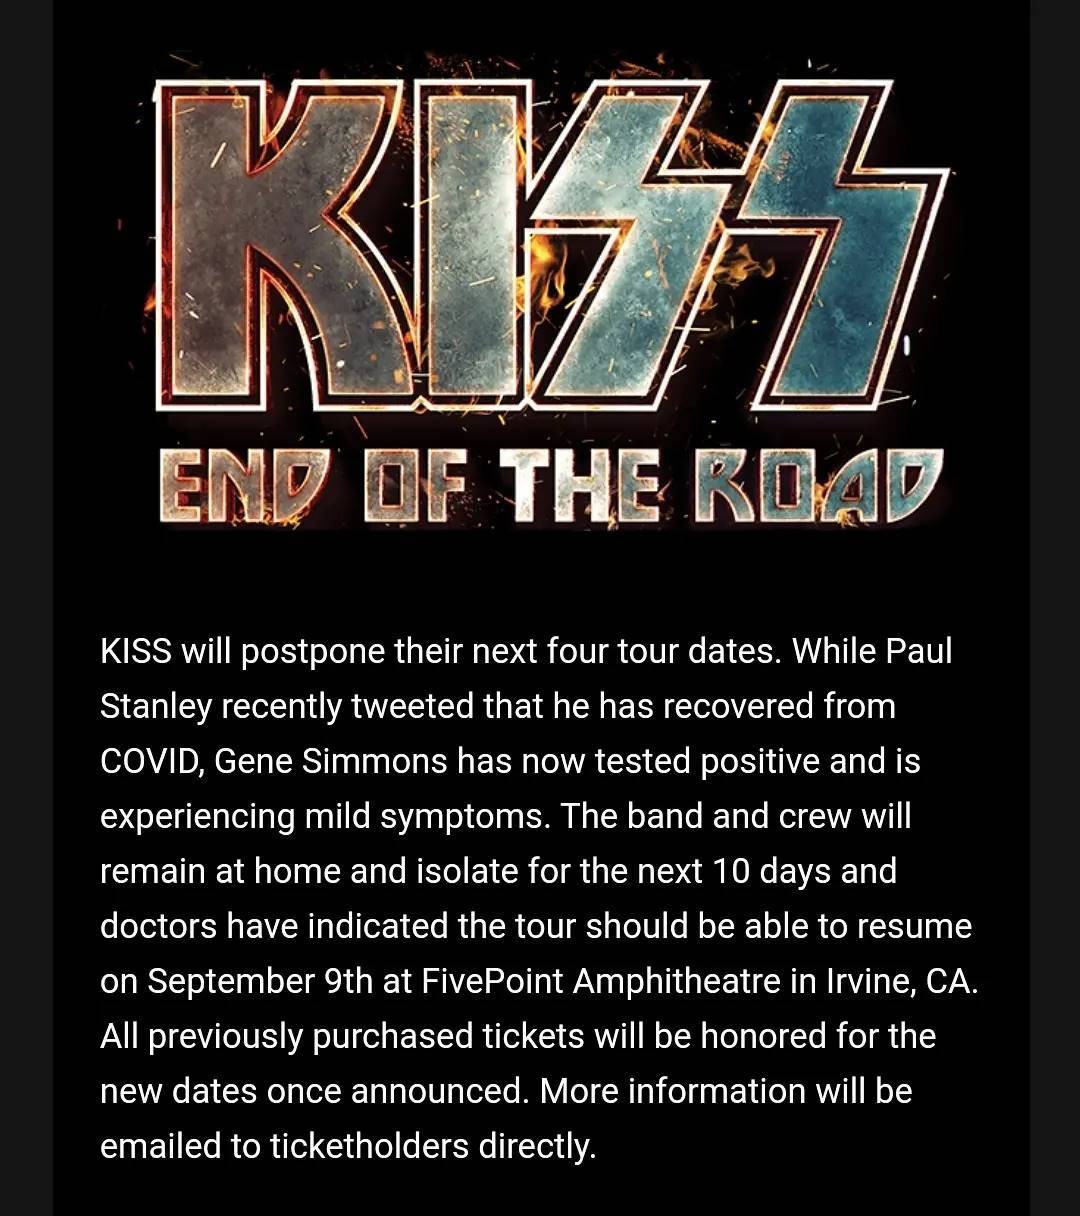 O recado no Instagram do Kiss sobre o adiamento de shows da banda devido ao teste positivo de Covid-19 de Gene Simmons (Foto: Reprodução Instagram)